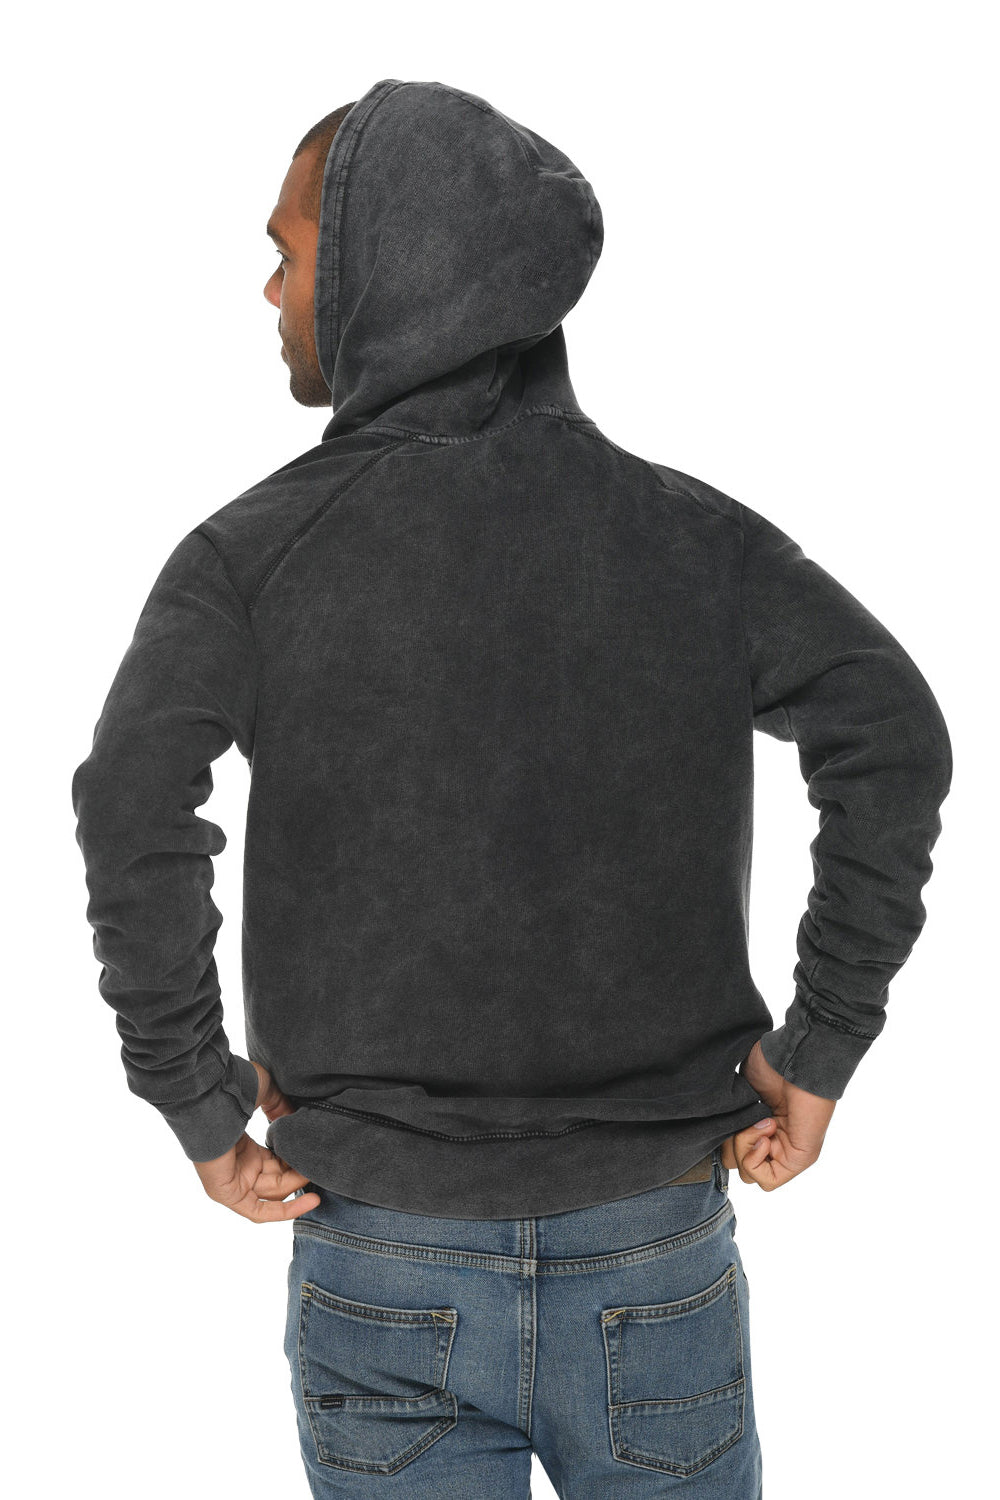 Lane Seven LST004 Mens Vintage Raglan Hooded Sweatshirt Hoodie Vintage Black Back